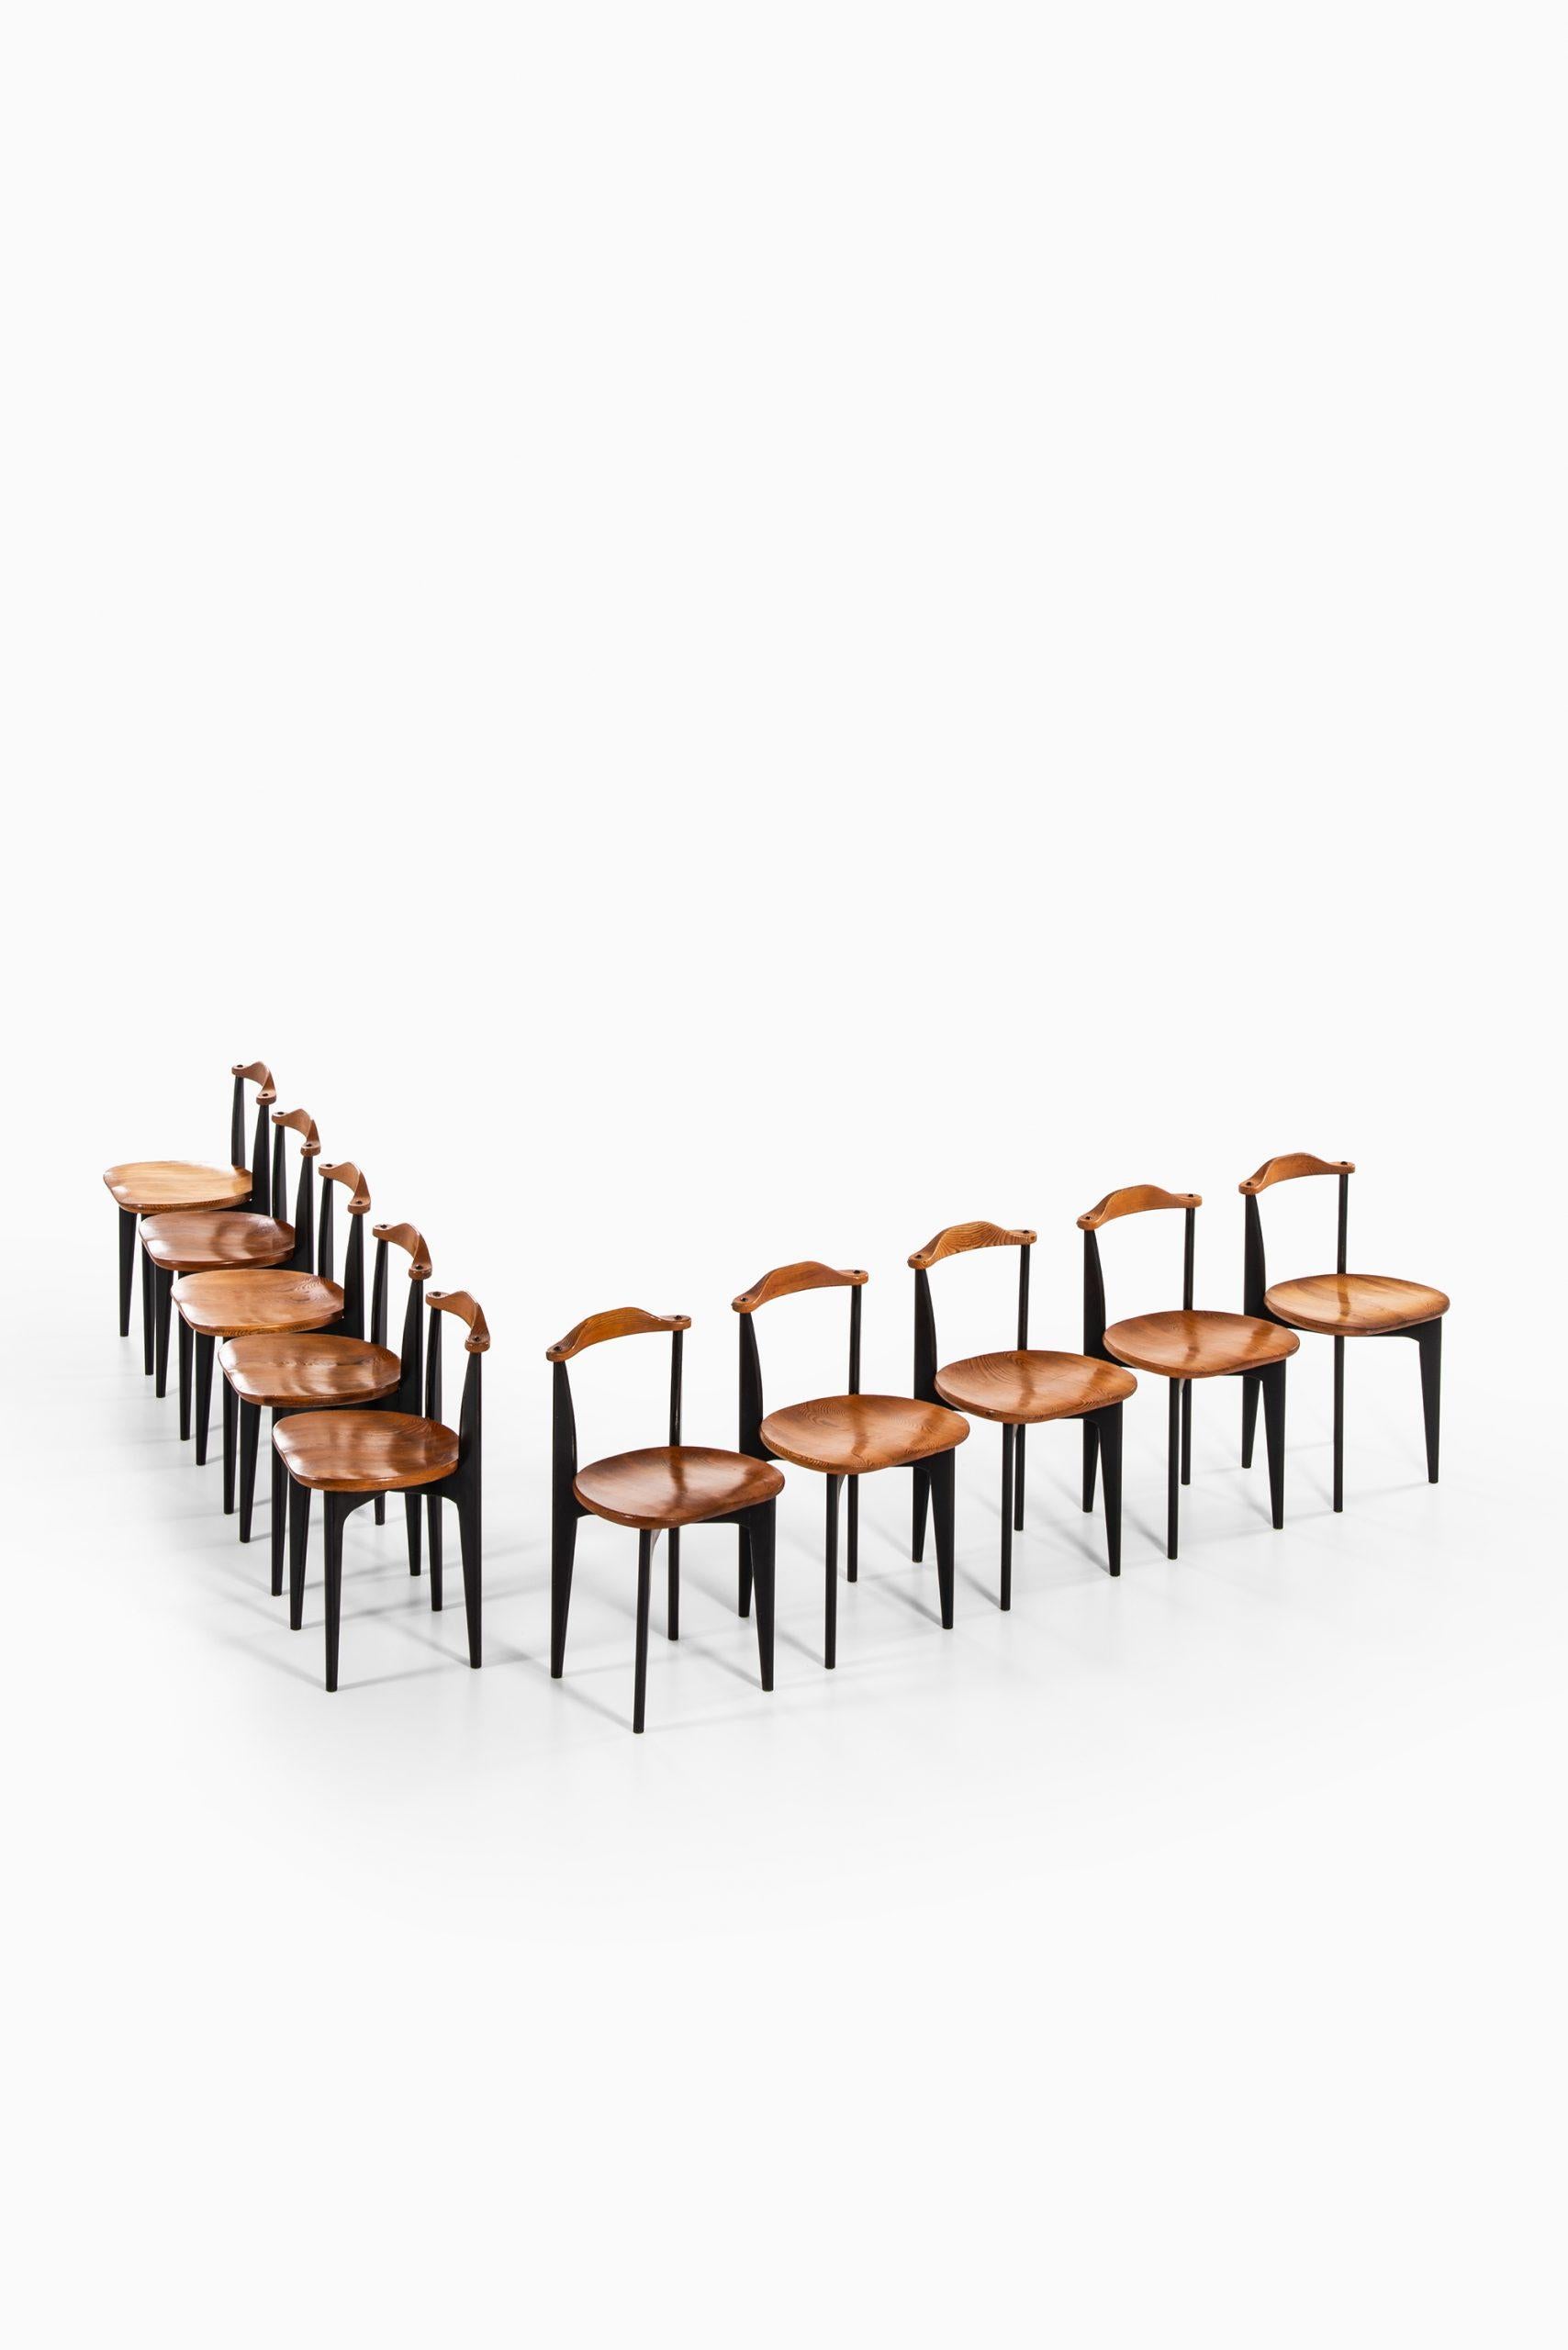 Seltener Satz von 10 Esszimmerstühlen Modell Thema entworfen von Yngve Ekström. Produziert von Swedese in Schweden.